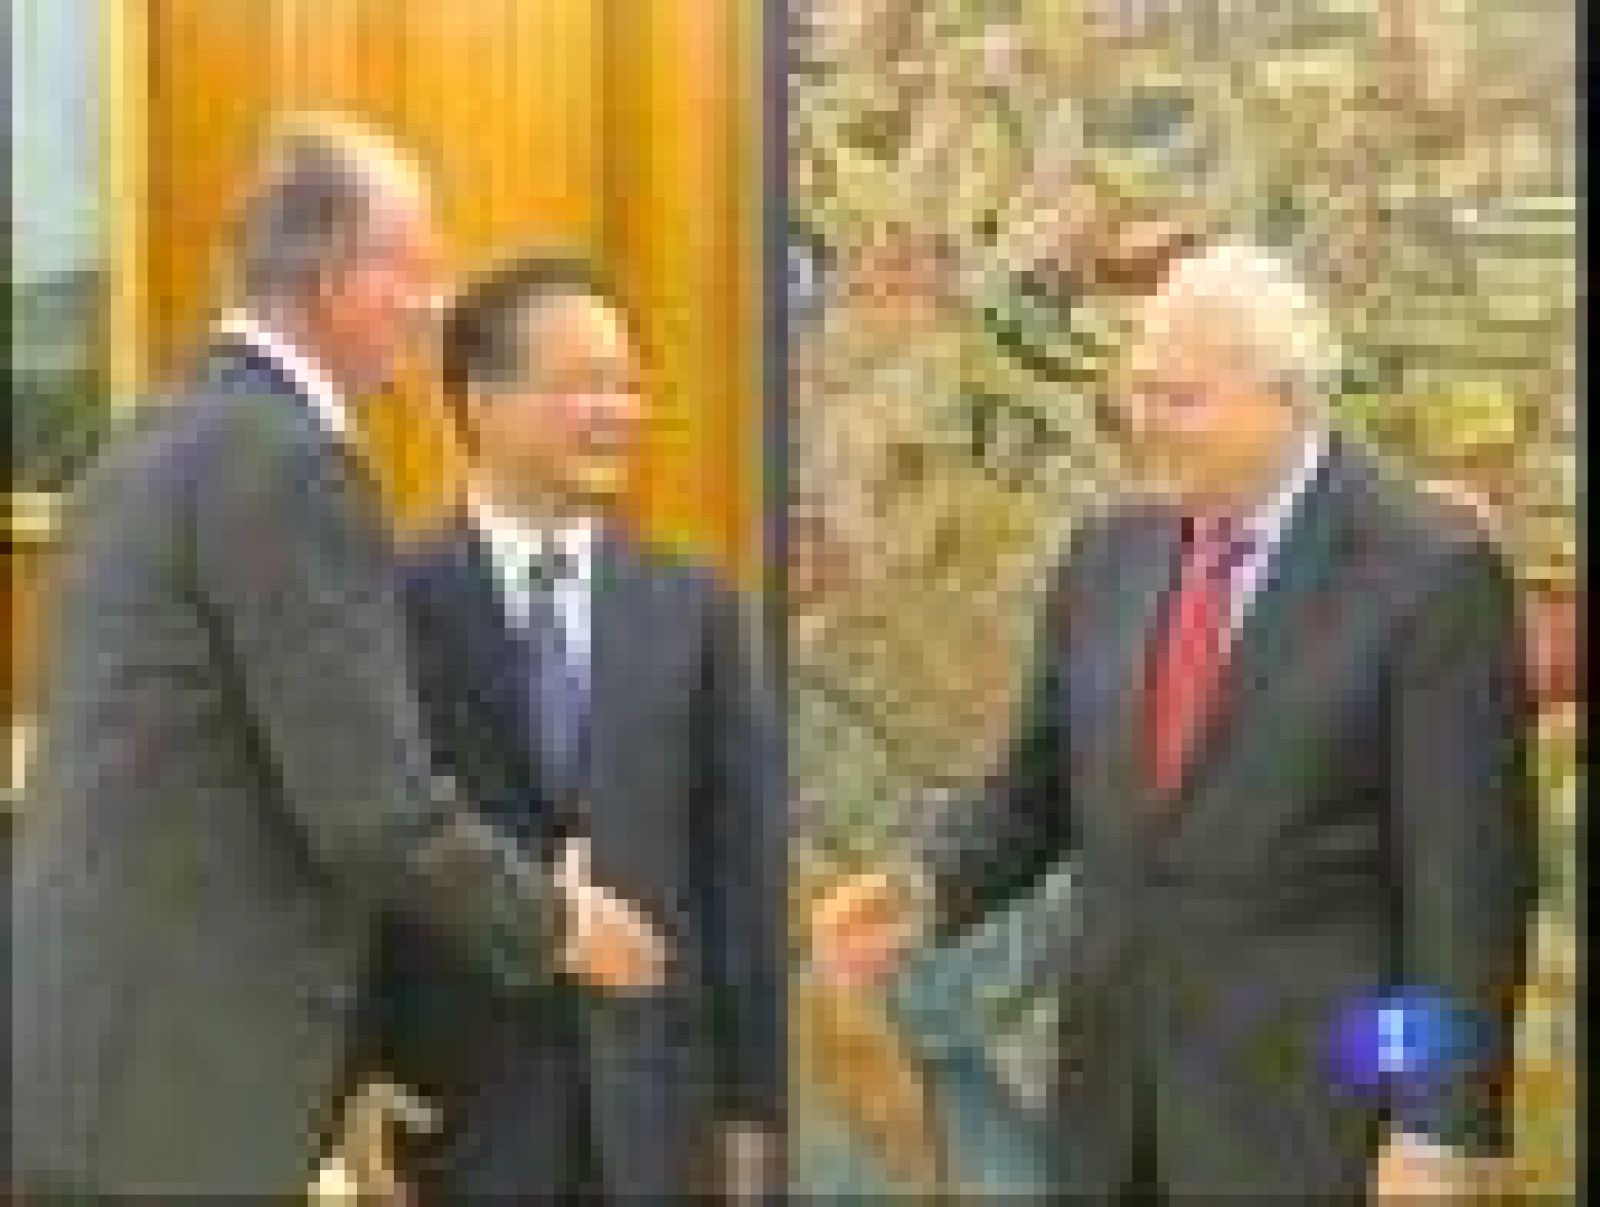 El primer ministro chino Wen Jiabao se ha reunido con José Luis Rodríguez Zapatero a quien ha invitado a visitar próximamente su país.